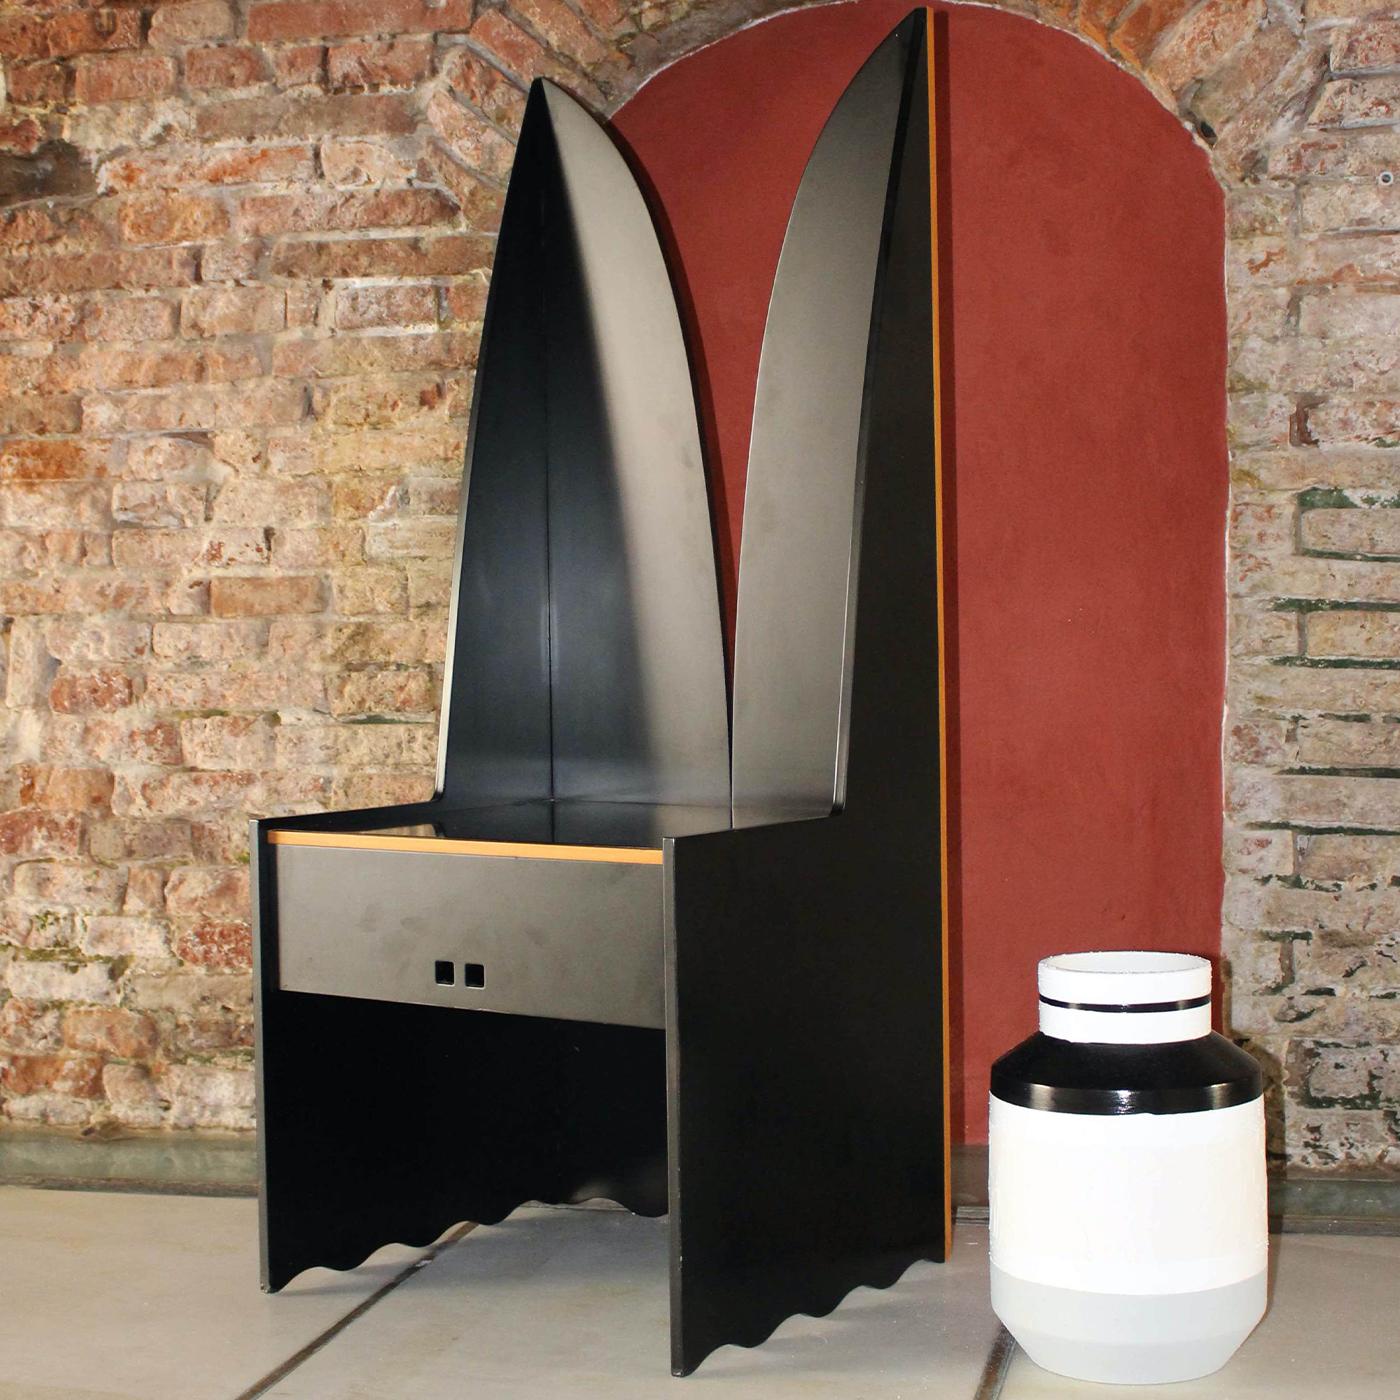 Dieser Sessel wurde 1987 von Ferdinando Meccani nach einem inspirierenden Besuch im Museum von Castelvecchio in Verona entworfen, das von dem berühmten Architekten Carlo Scarpa restauriert wurde. Er zelebriert Design und Architektur in einer